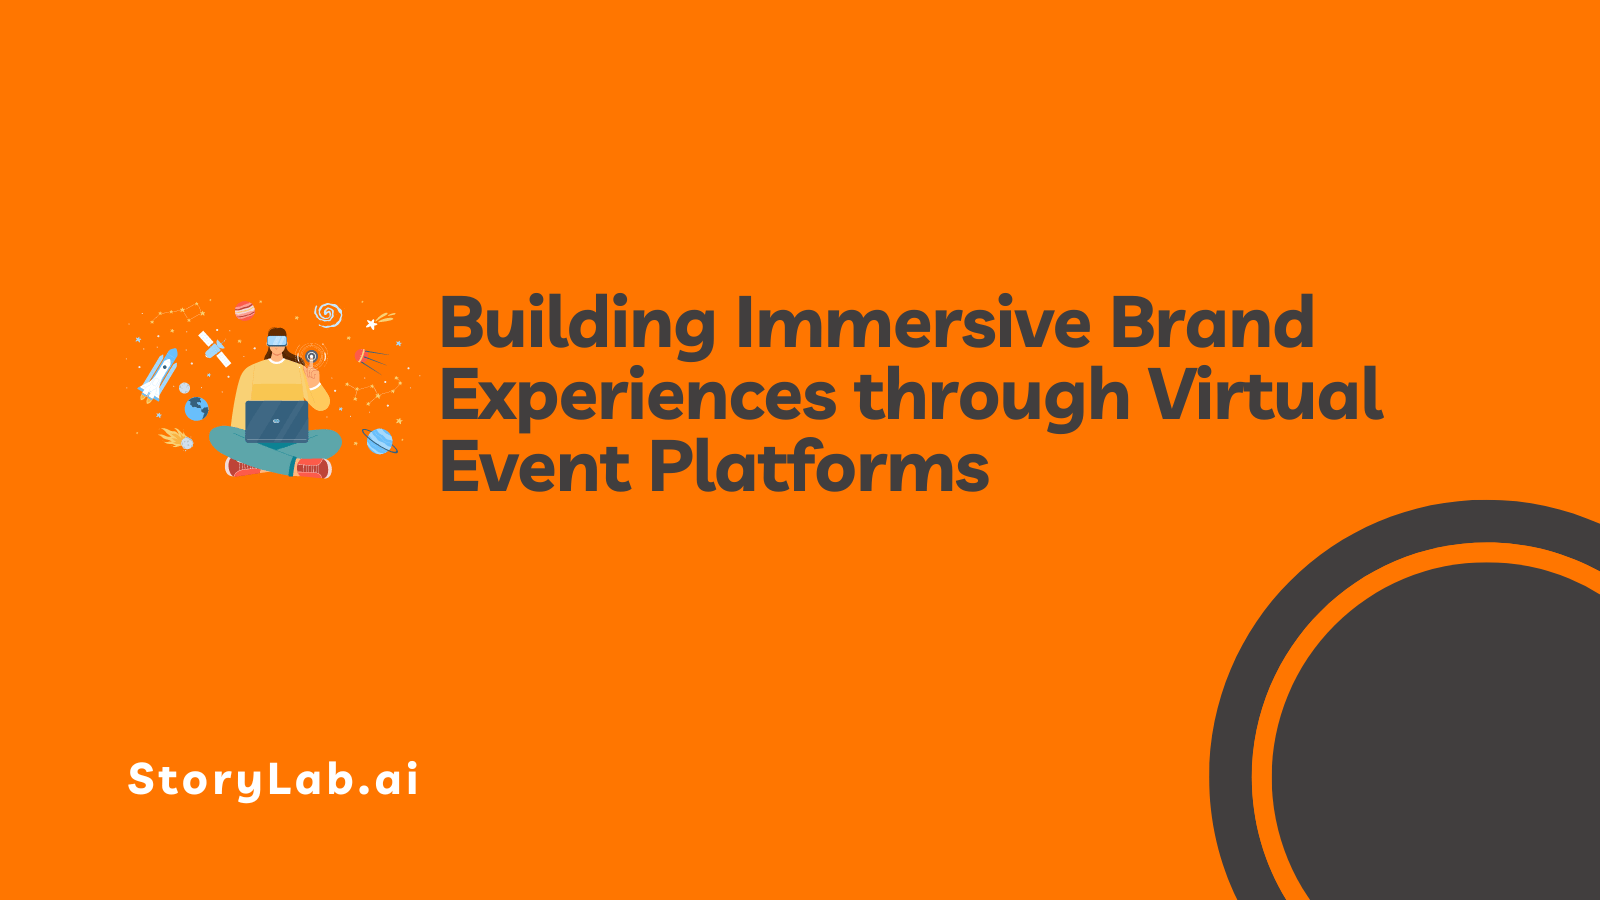 Meeslepende merkervaringen bouwen via virtuele evenementenplatforms